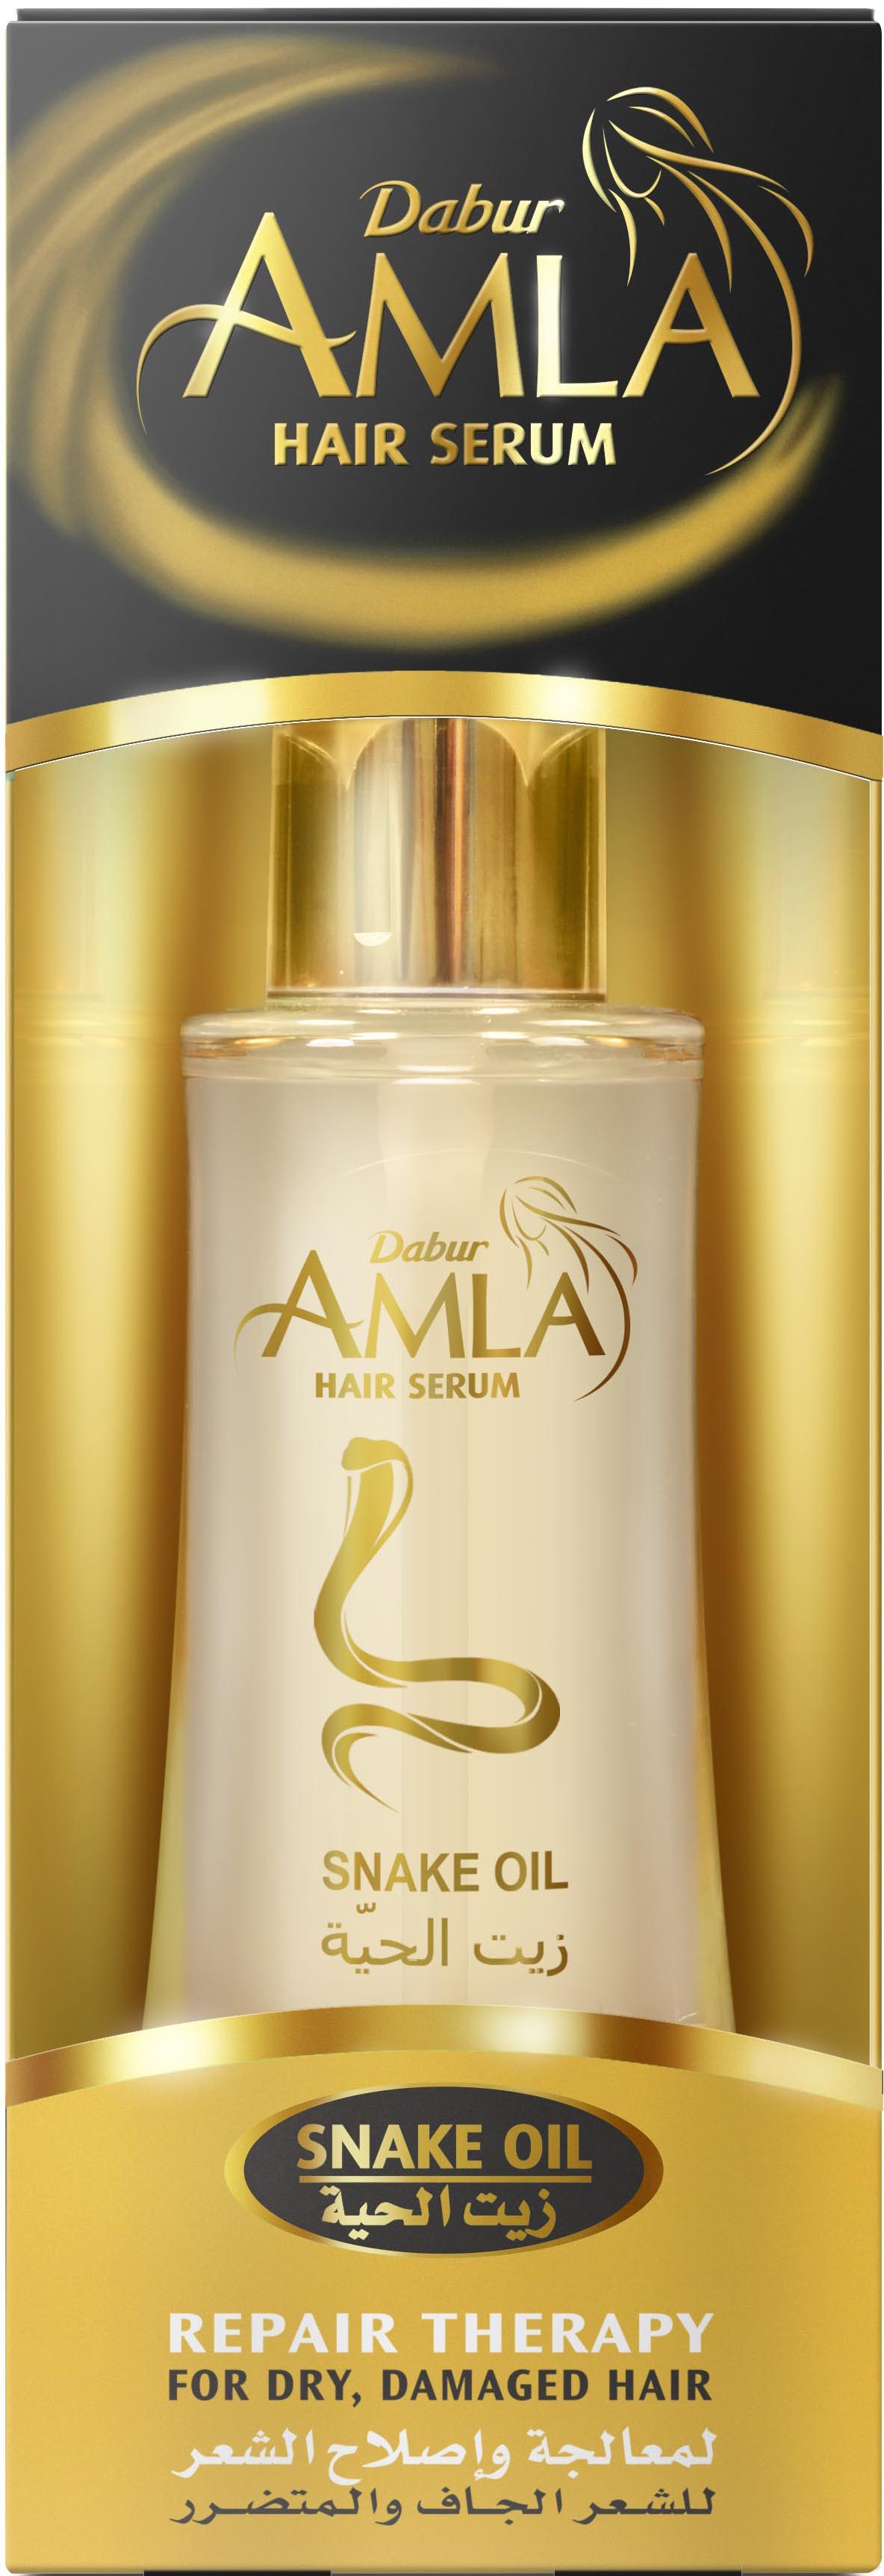 Сыворотка для волос Dabur AMLA Serum Repair Therapy Восстанавливающая терапия goldwell сыворотка для волос 6 ступенчатого действия dualsenses rich repair 6 effects serum